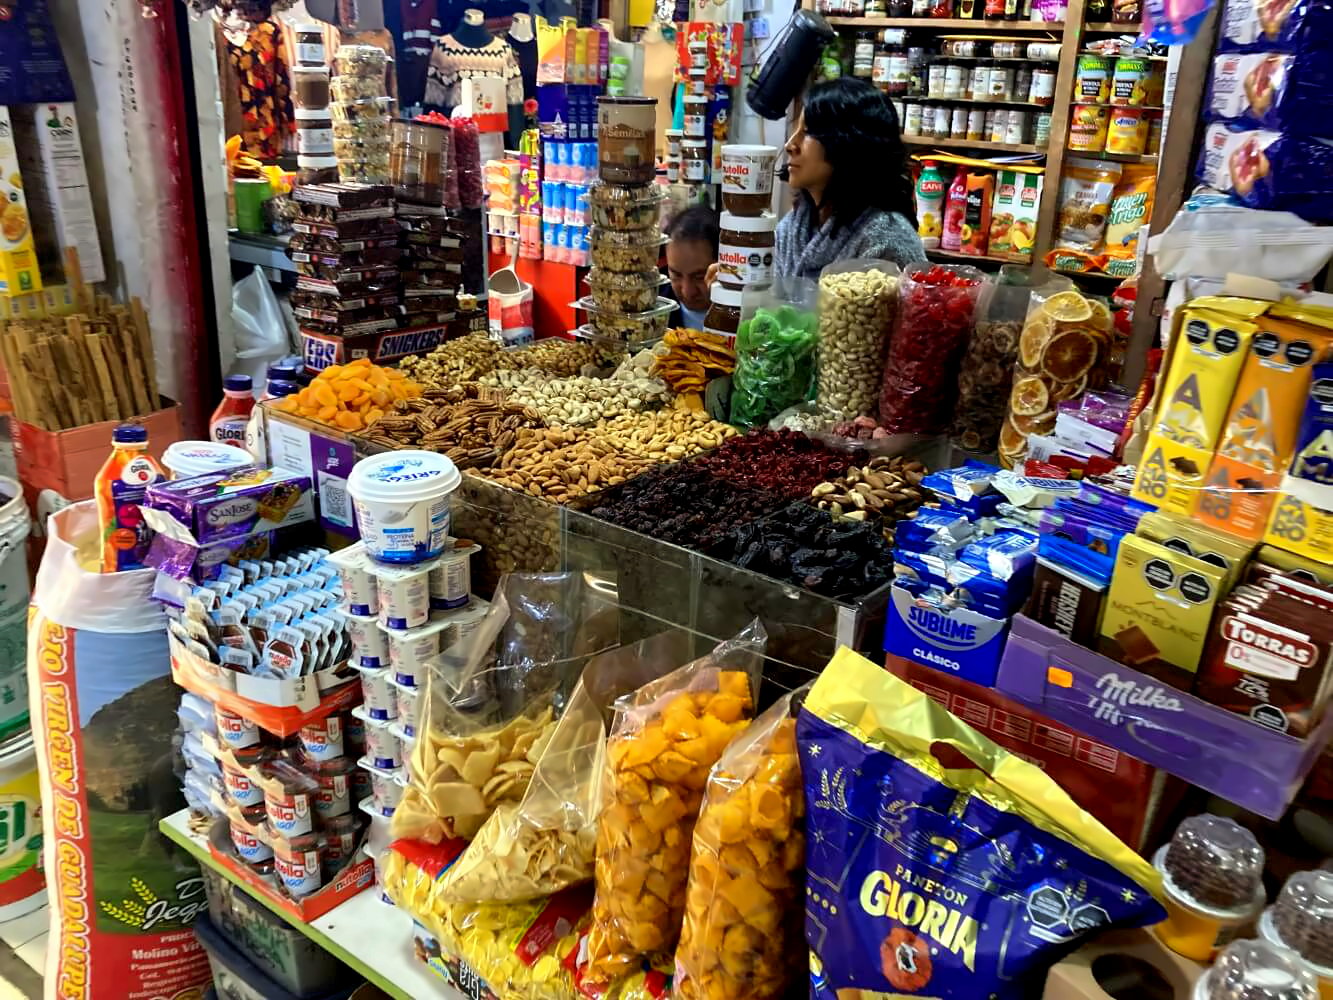 Mercado Central in Huaraz.